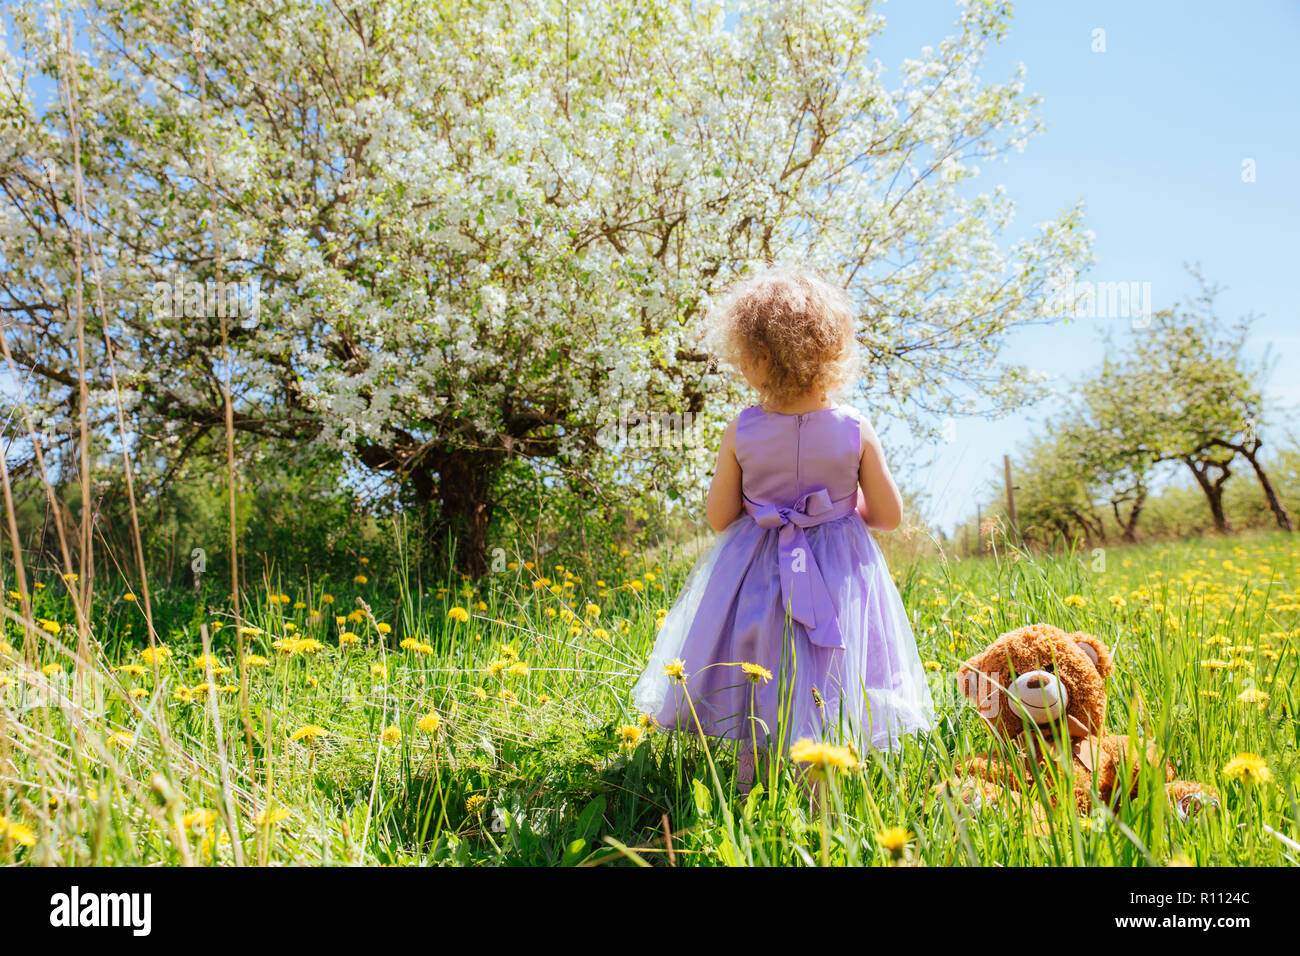 Giovane ragazza in viola party dress ammirare meravigliose fioriture melo oudoors nel verde, il tarassaco intorno a lei accanto a lei è popolare giocattolo imbottito essere Foto Stock